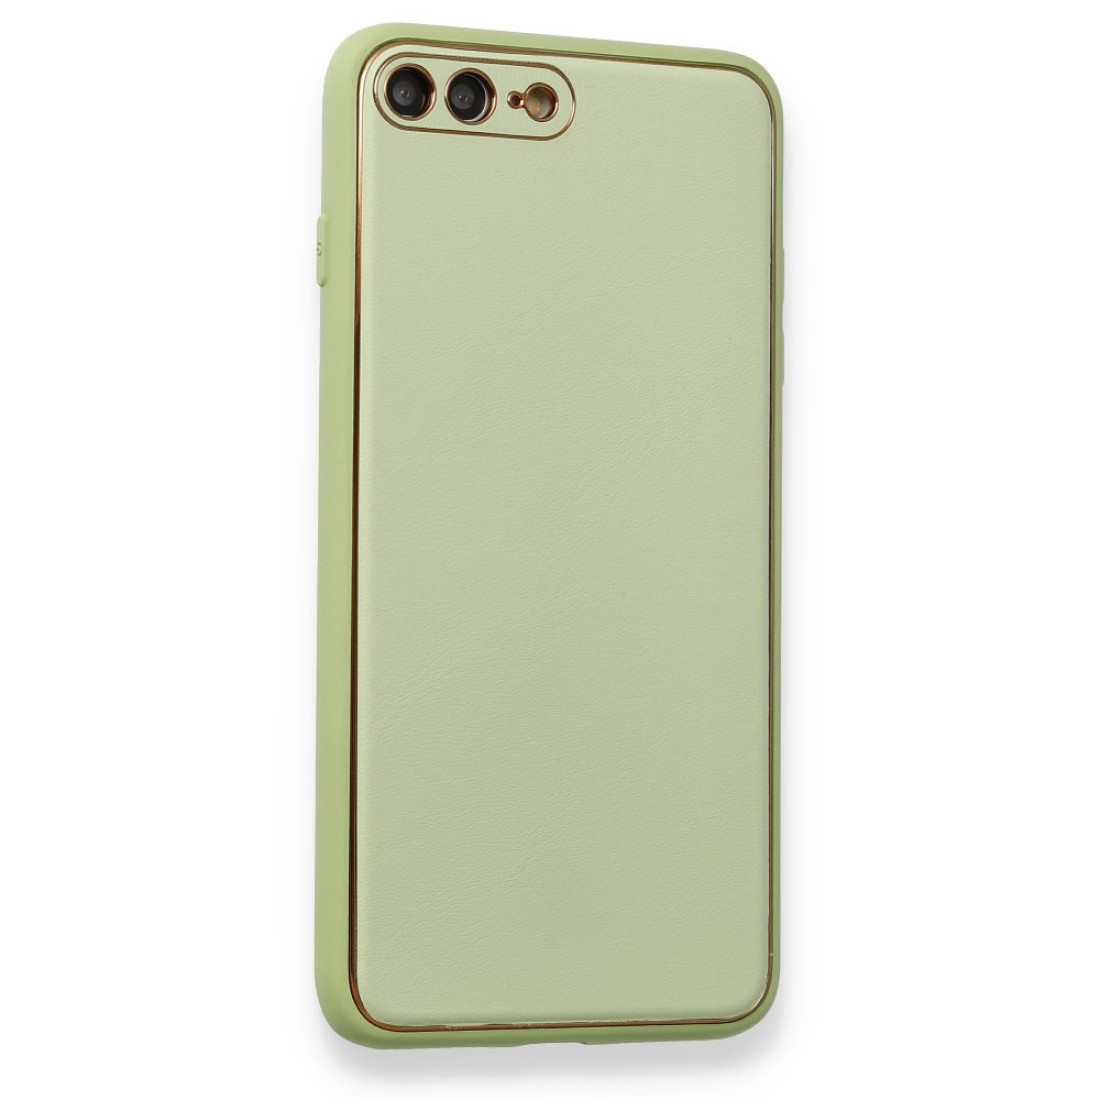 Apple iPhone 7 Plus Kılıf Coco Deri Silikon Kapak - Açık Yeşil